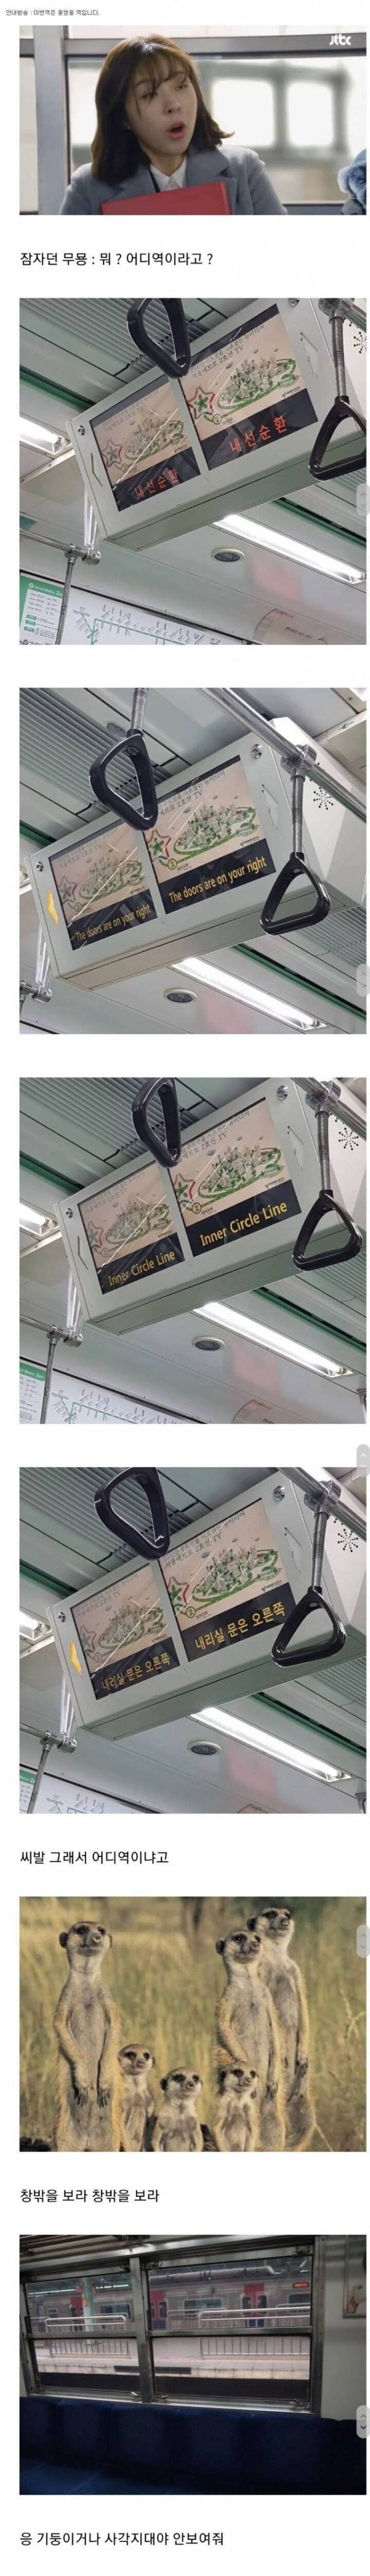 한국 지하철 유일한 단점...jpg | 인스티즈